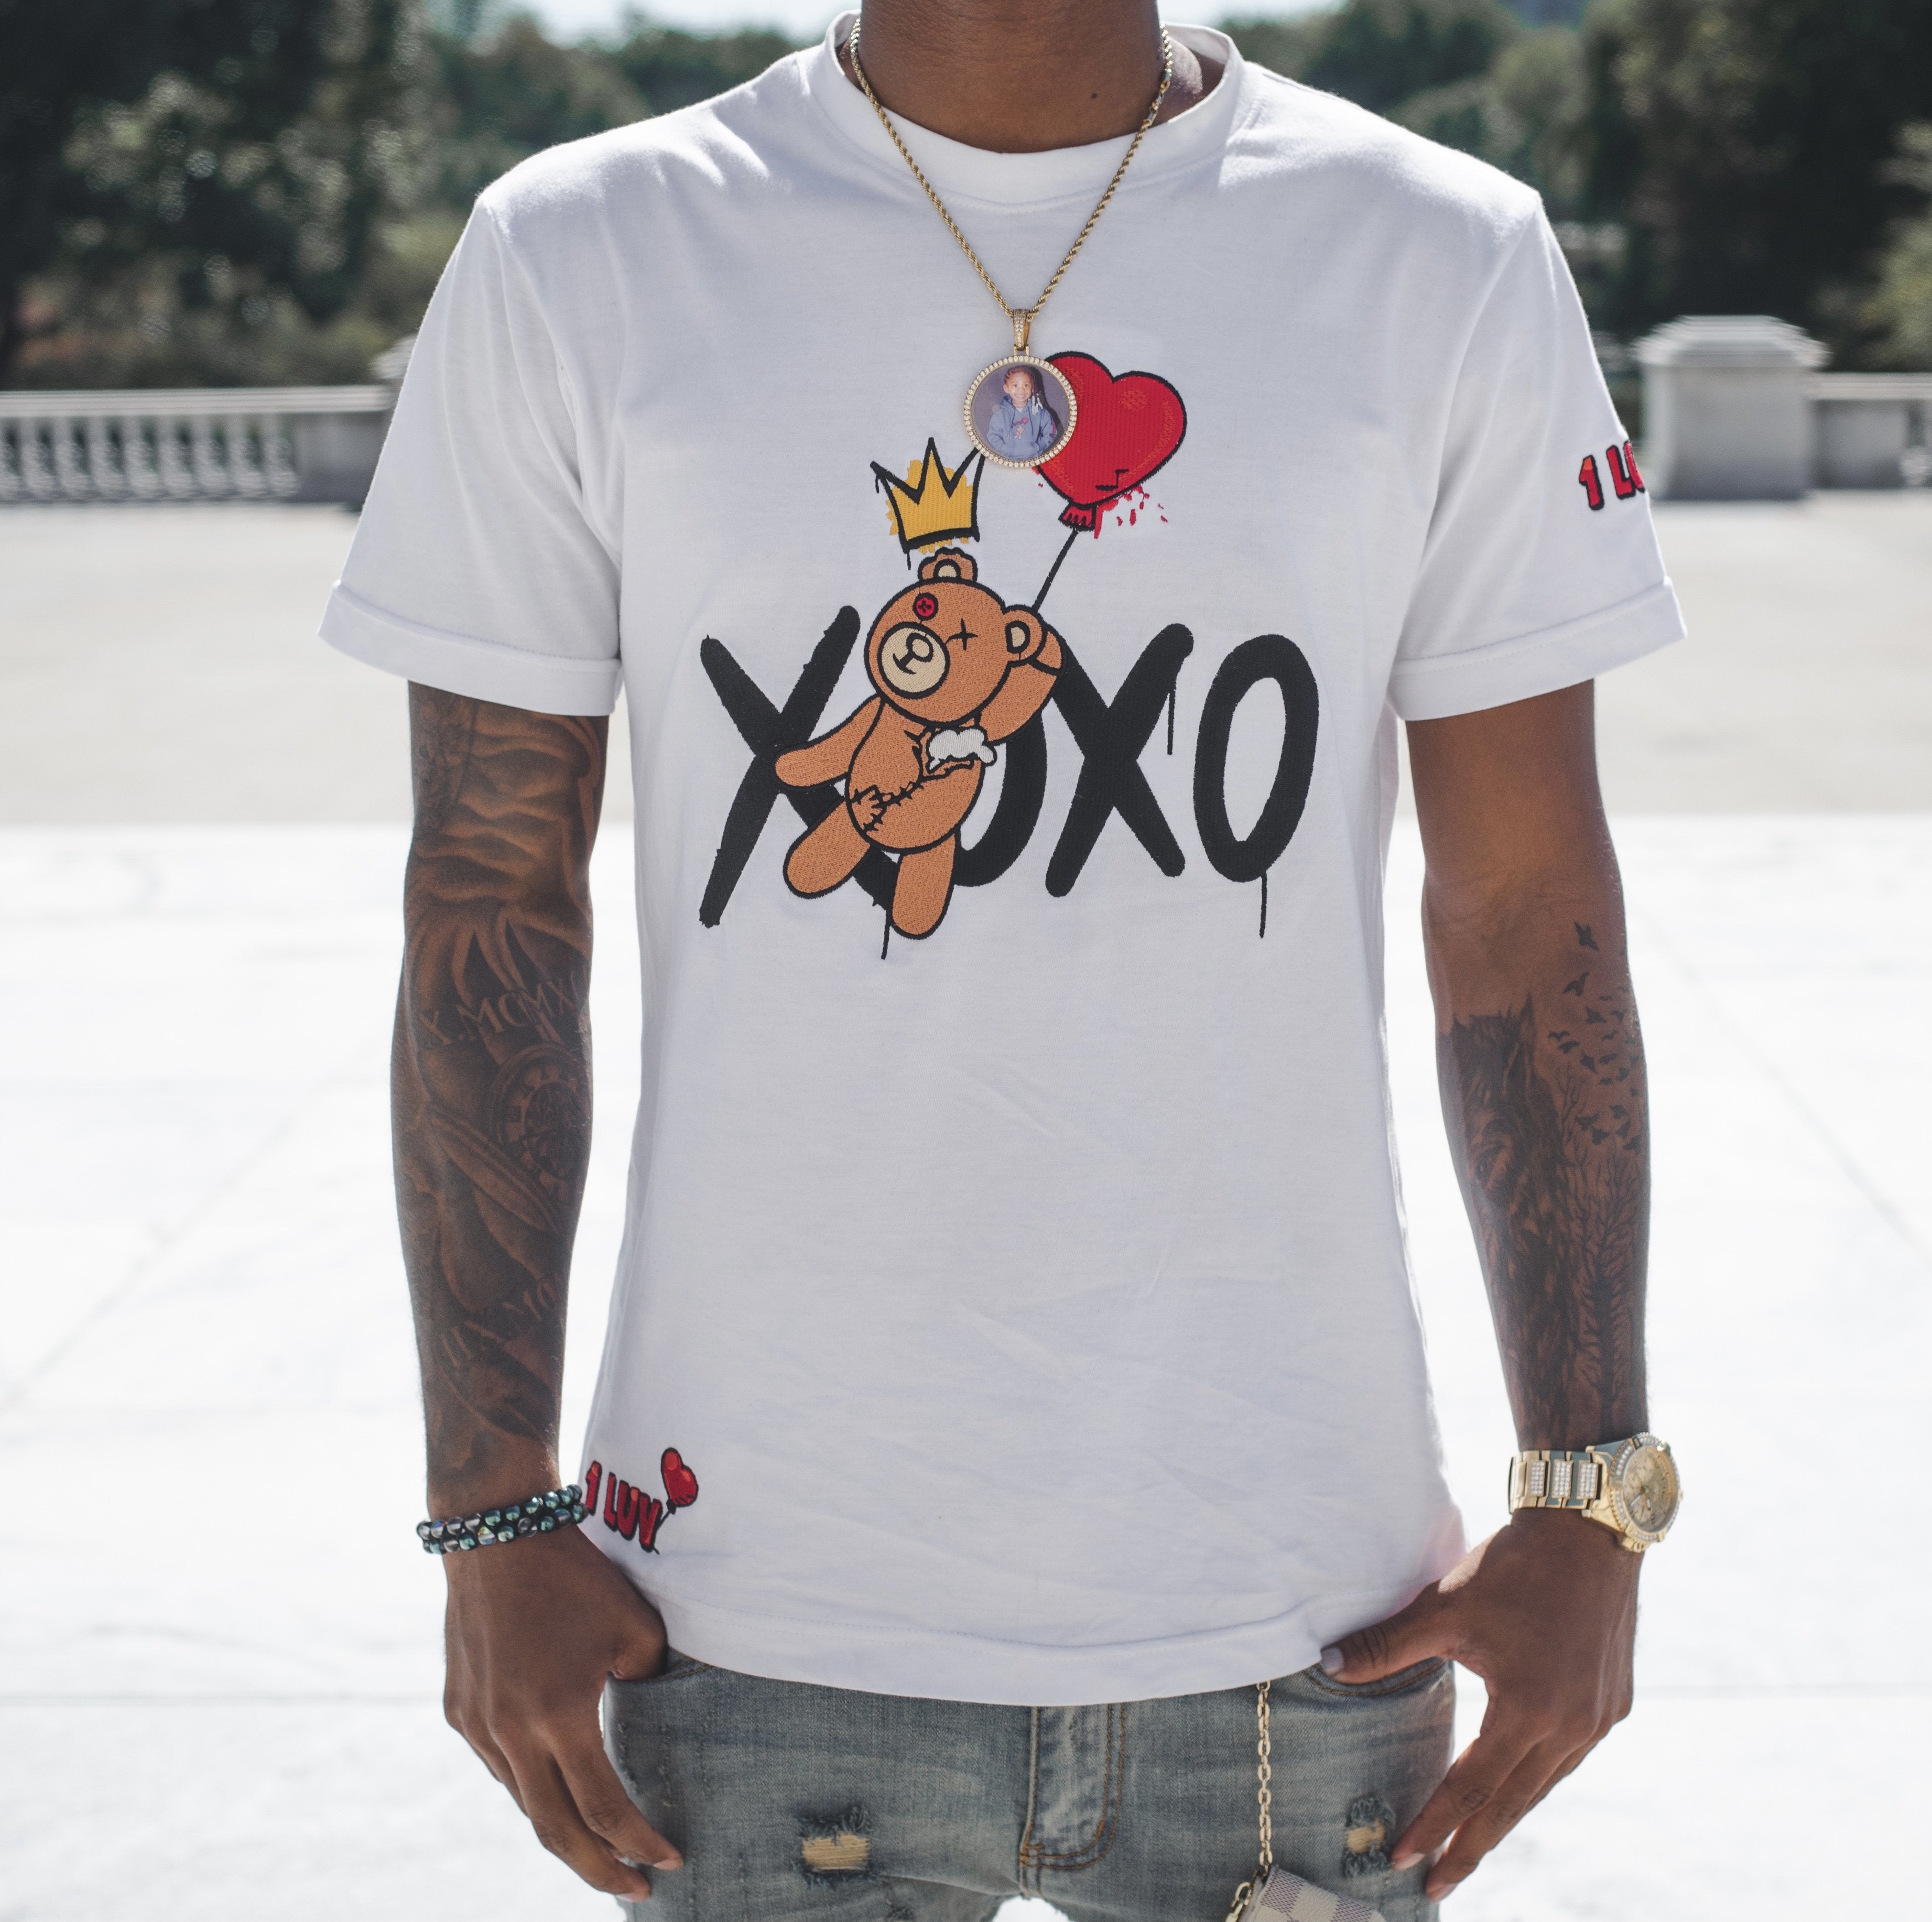 1Luv "XOXO" Shirt